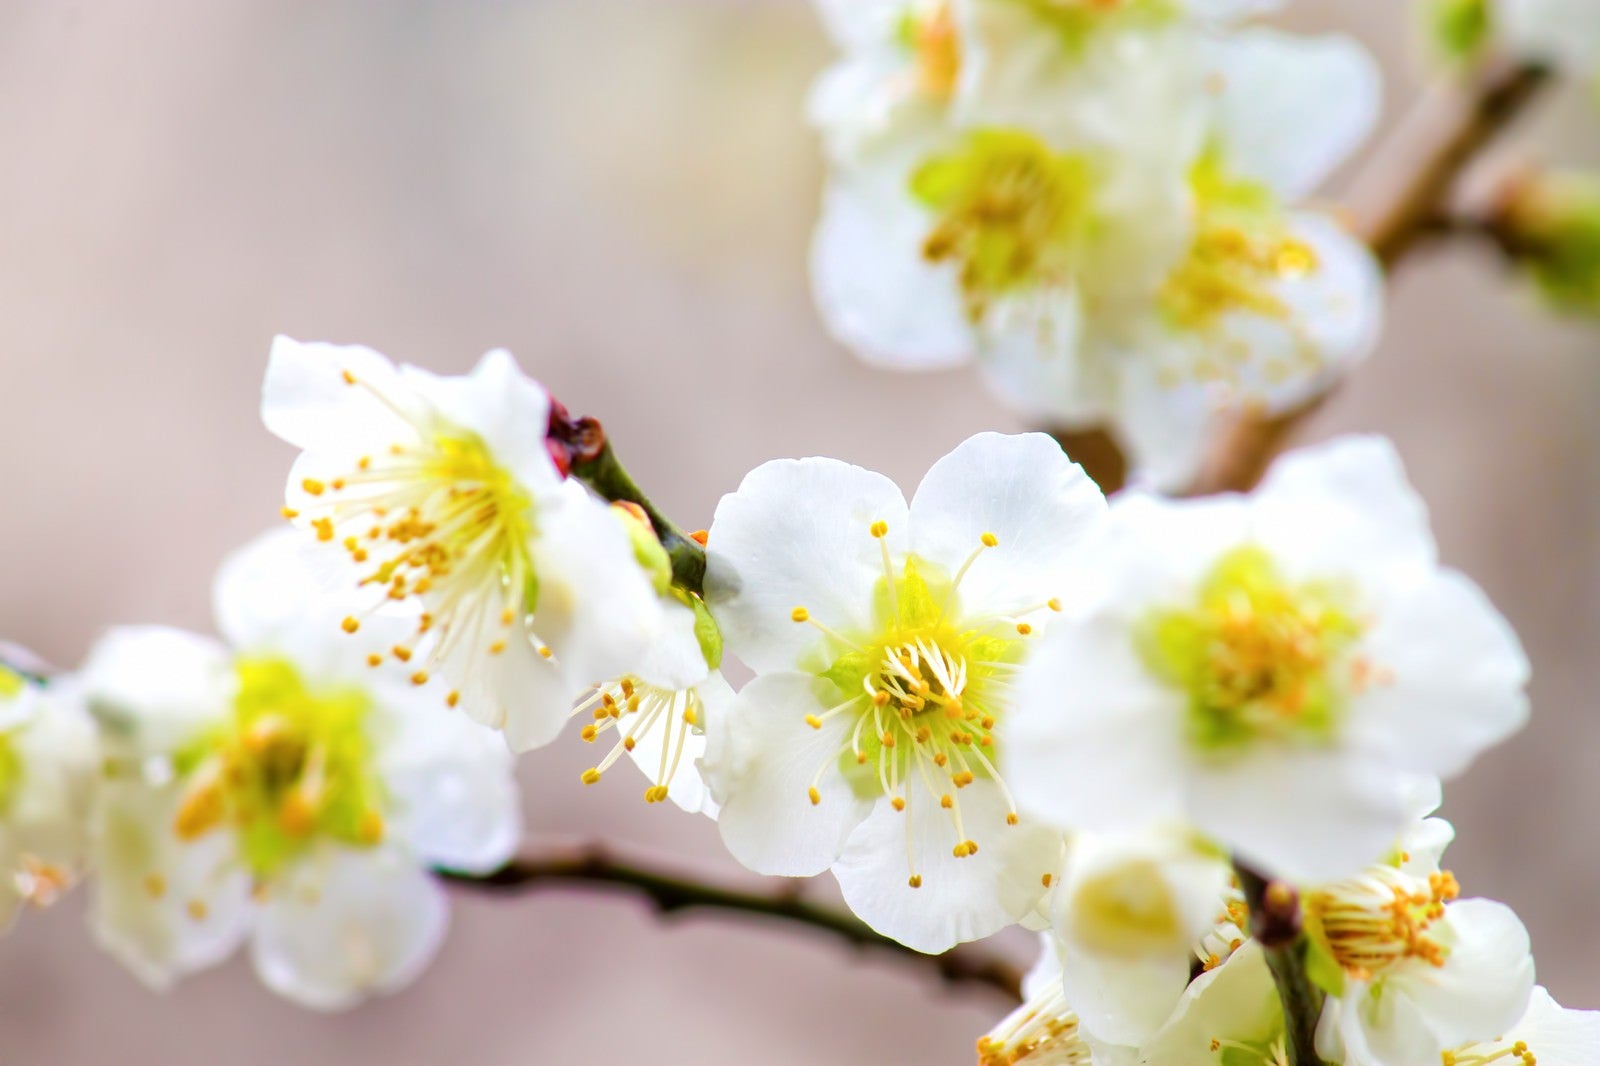 「白い梅の花のアップ」の写真